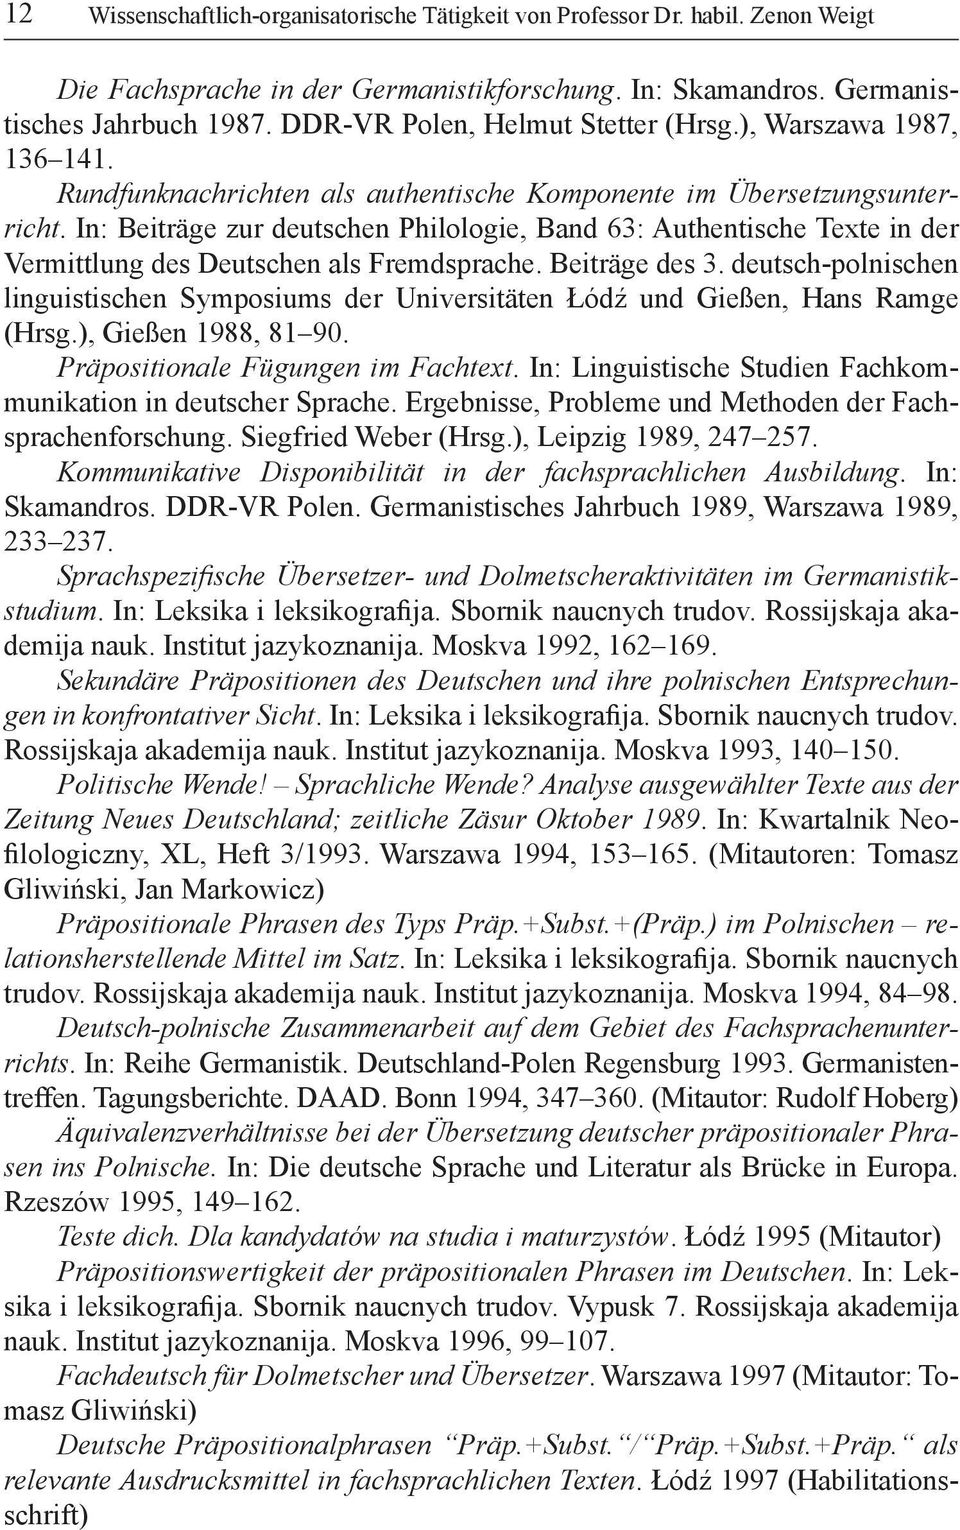 In: Beiträge zur deutschen Philologie, Band 63: Authentische Texte in der Vermittlung des Deutschen als Fremdsprache. Beiträge des 3.